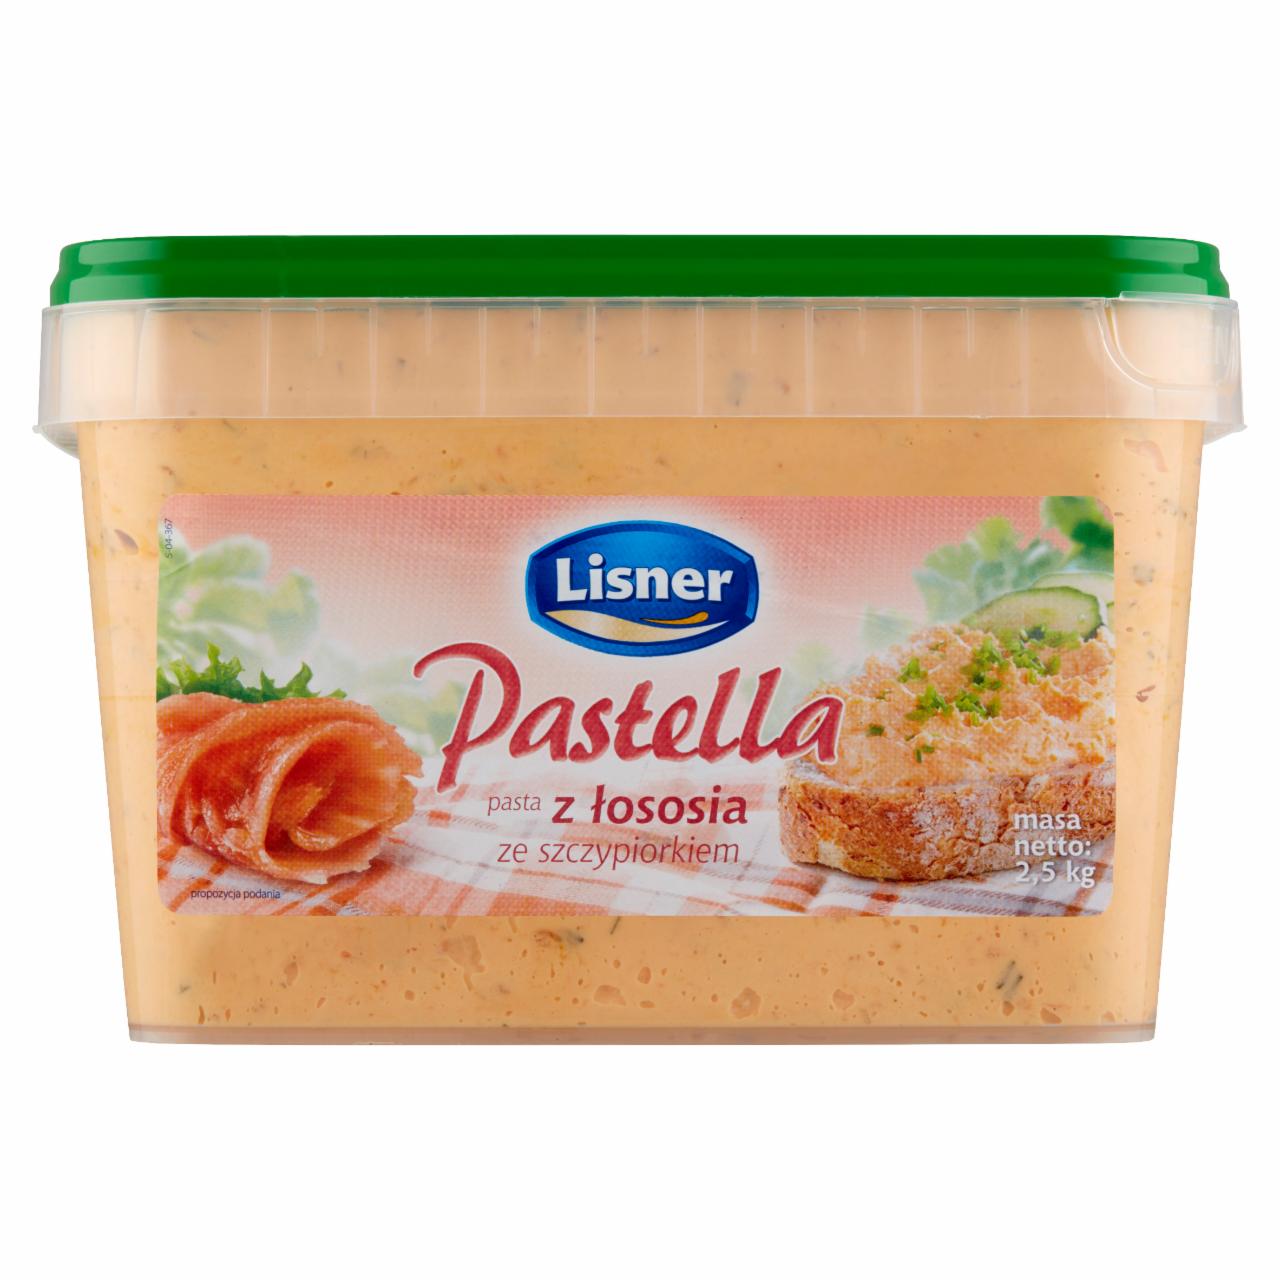 Zdjęcia - Lisner Pastella Pasta z łososia ze szczypiorkiem 2,5 kg